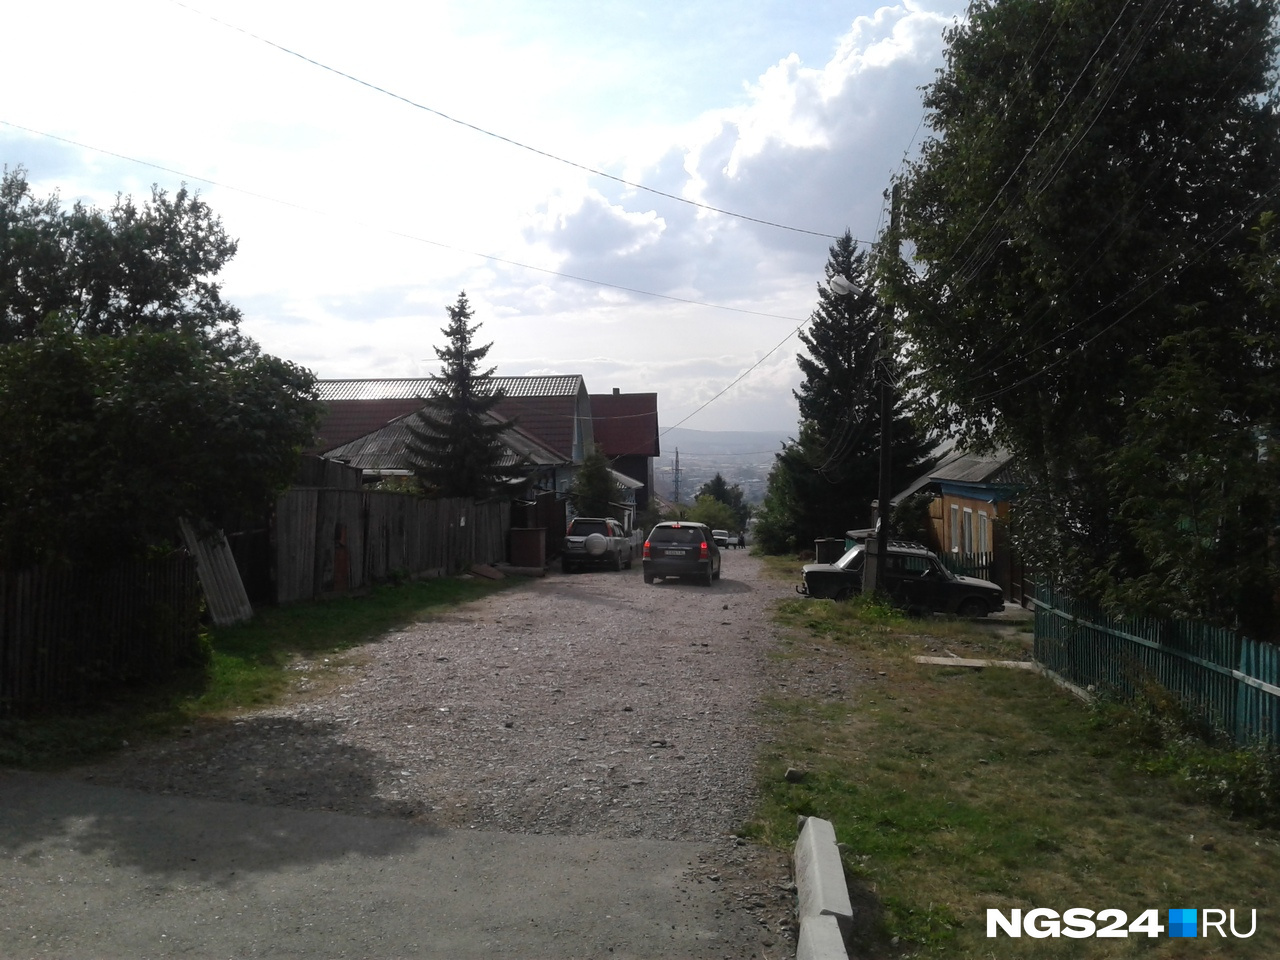 Если не знать, что находишься в черте Красноярска, можно подумать, что оказался где-нибудь в деревне. Кругом только частные дома, новые и старые